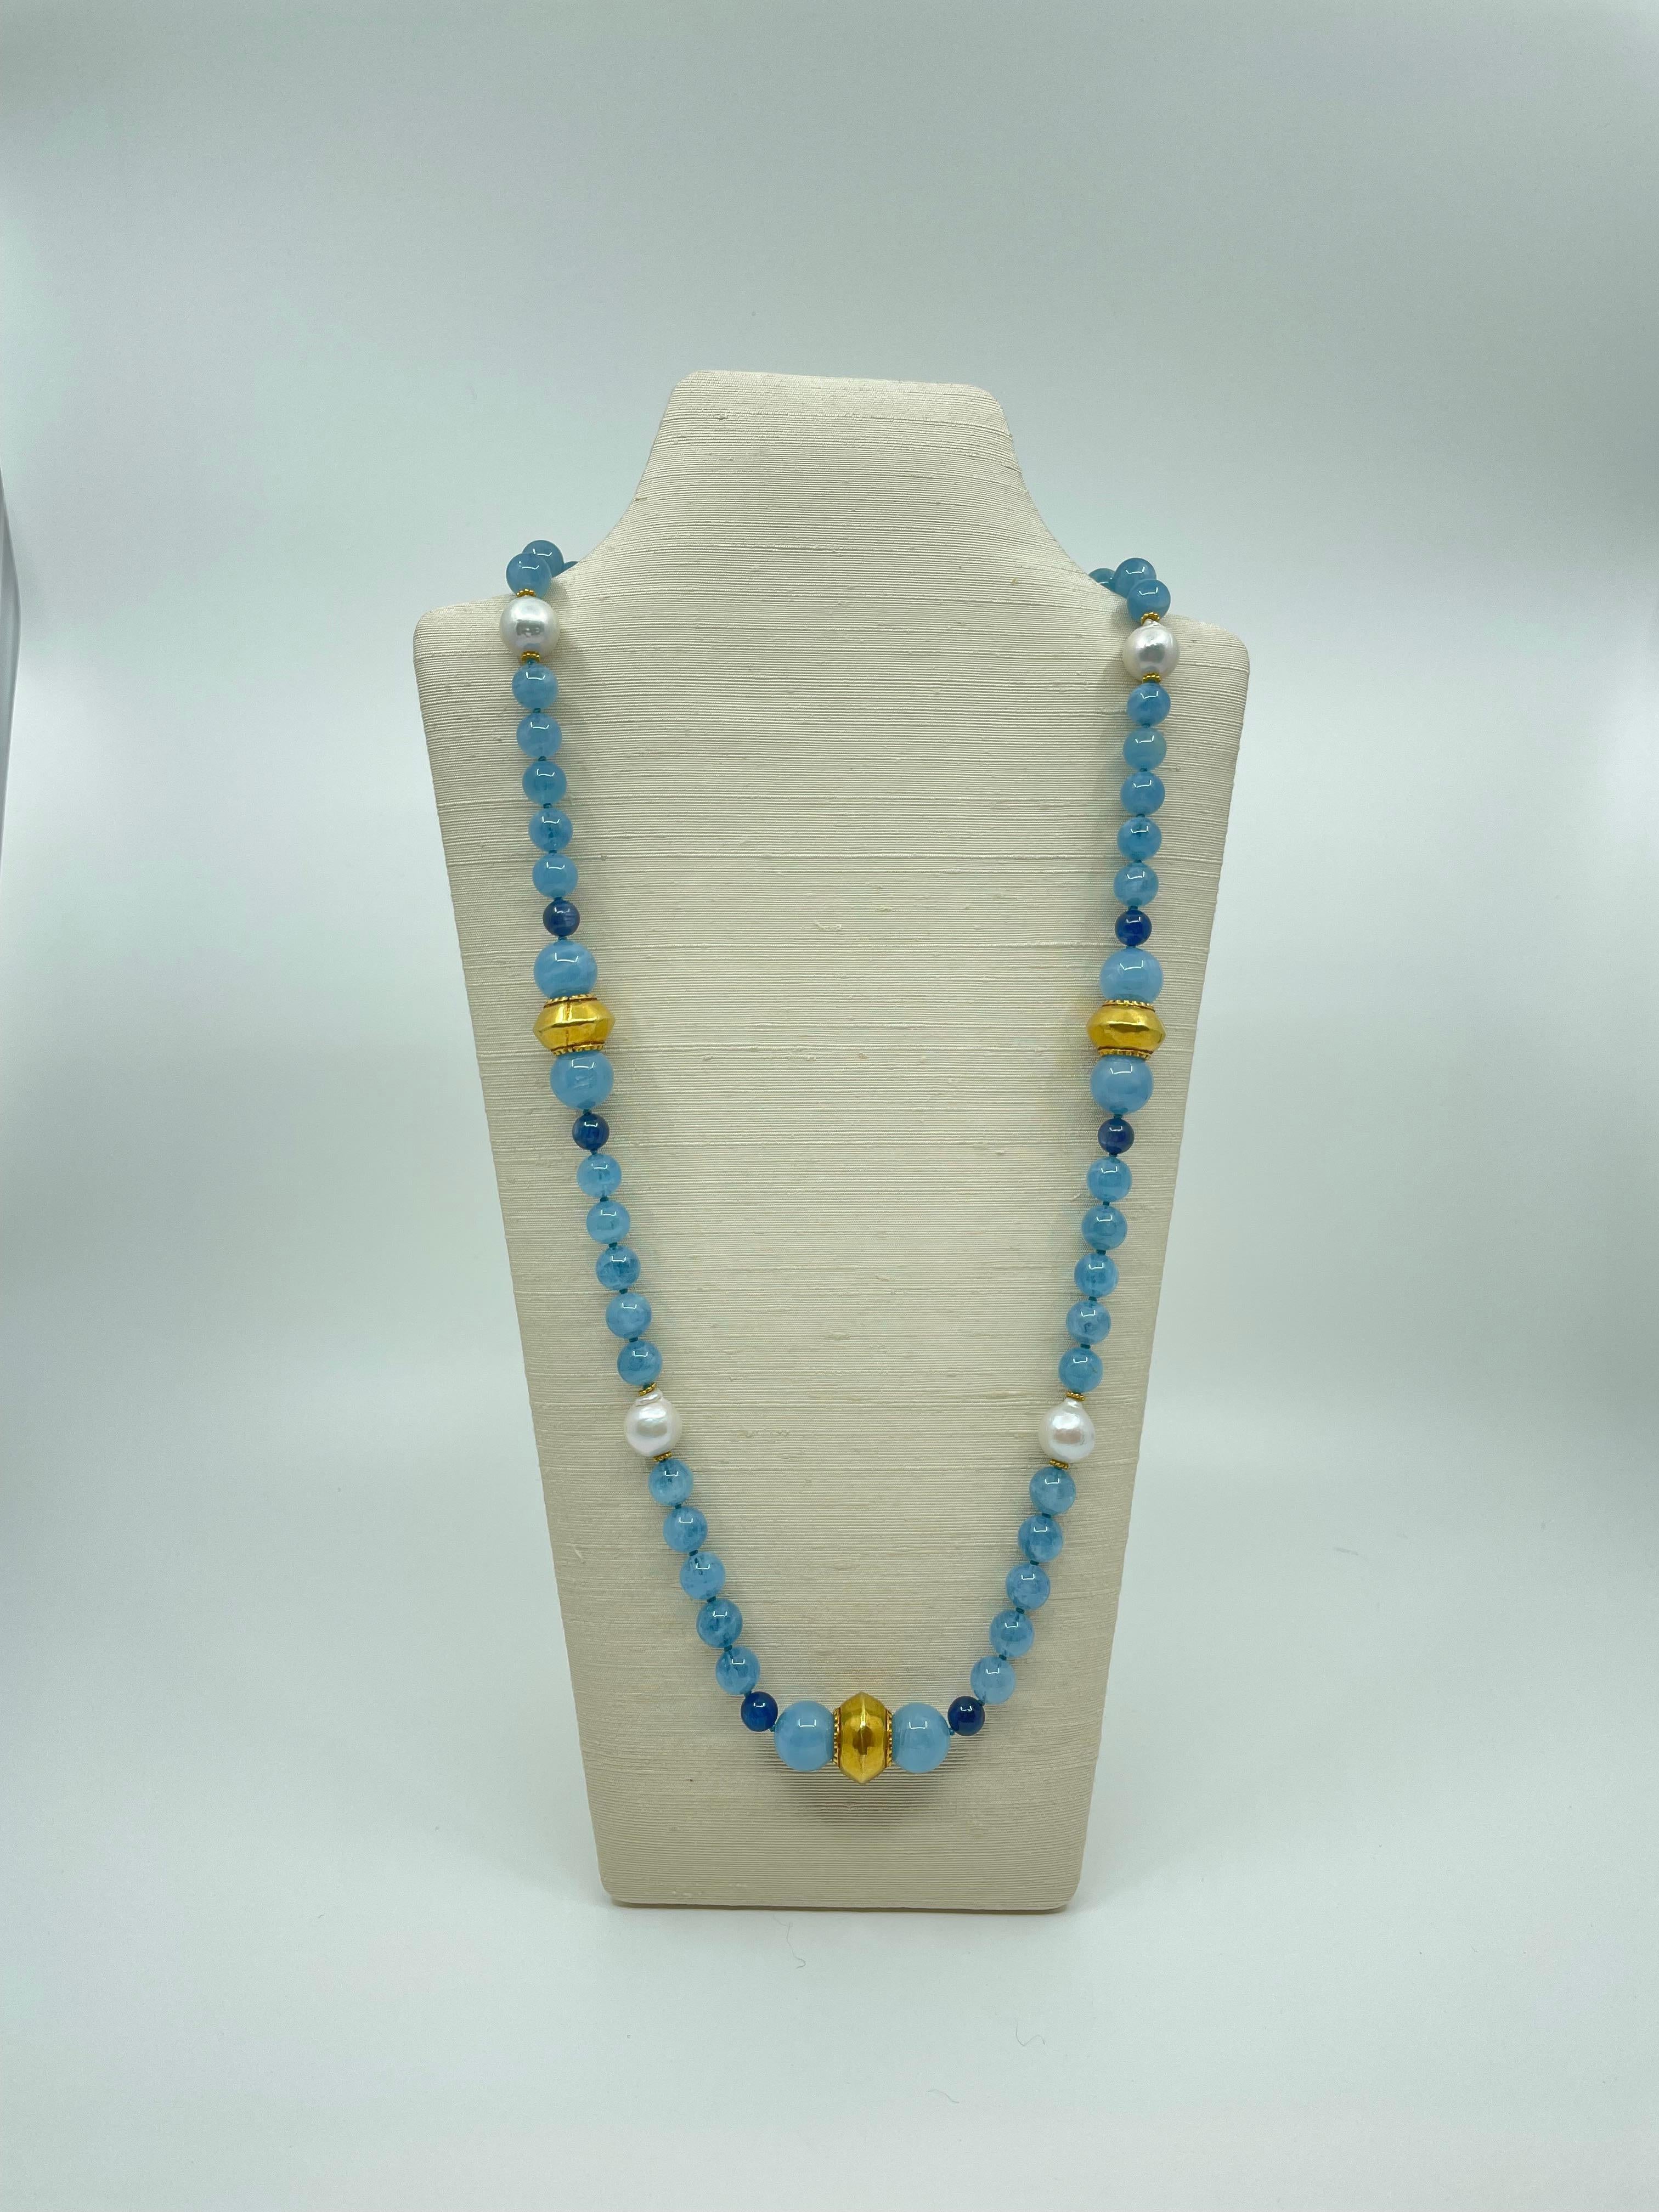 Issues de notre collection Amalfi, les merveilleuses perles d'aigue-marine, accentuées par trois groupes de perles de cyanite bleue vibrante et de perles d'aigue-marine bleue douce avec une perle d'or entre les deux, espacées par des perles des mers